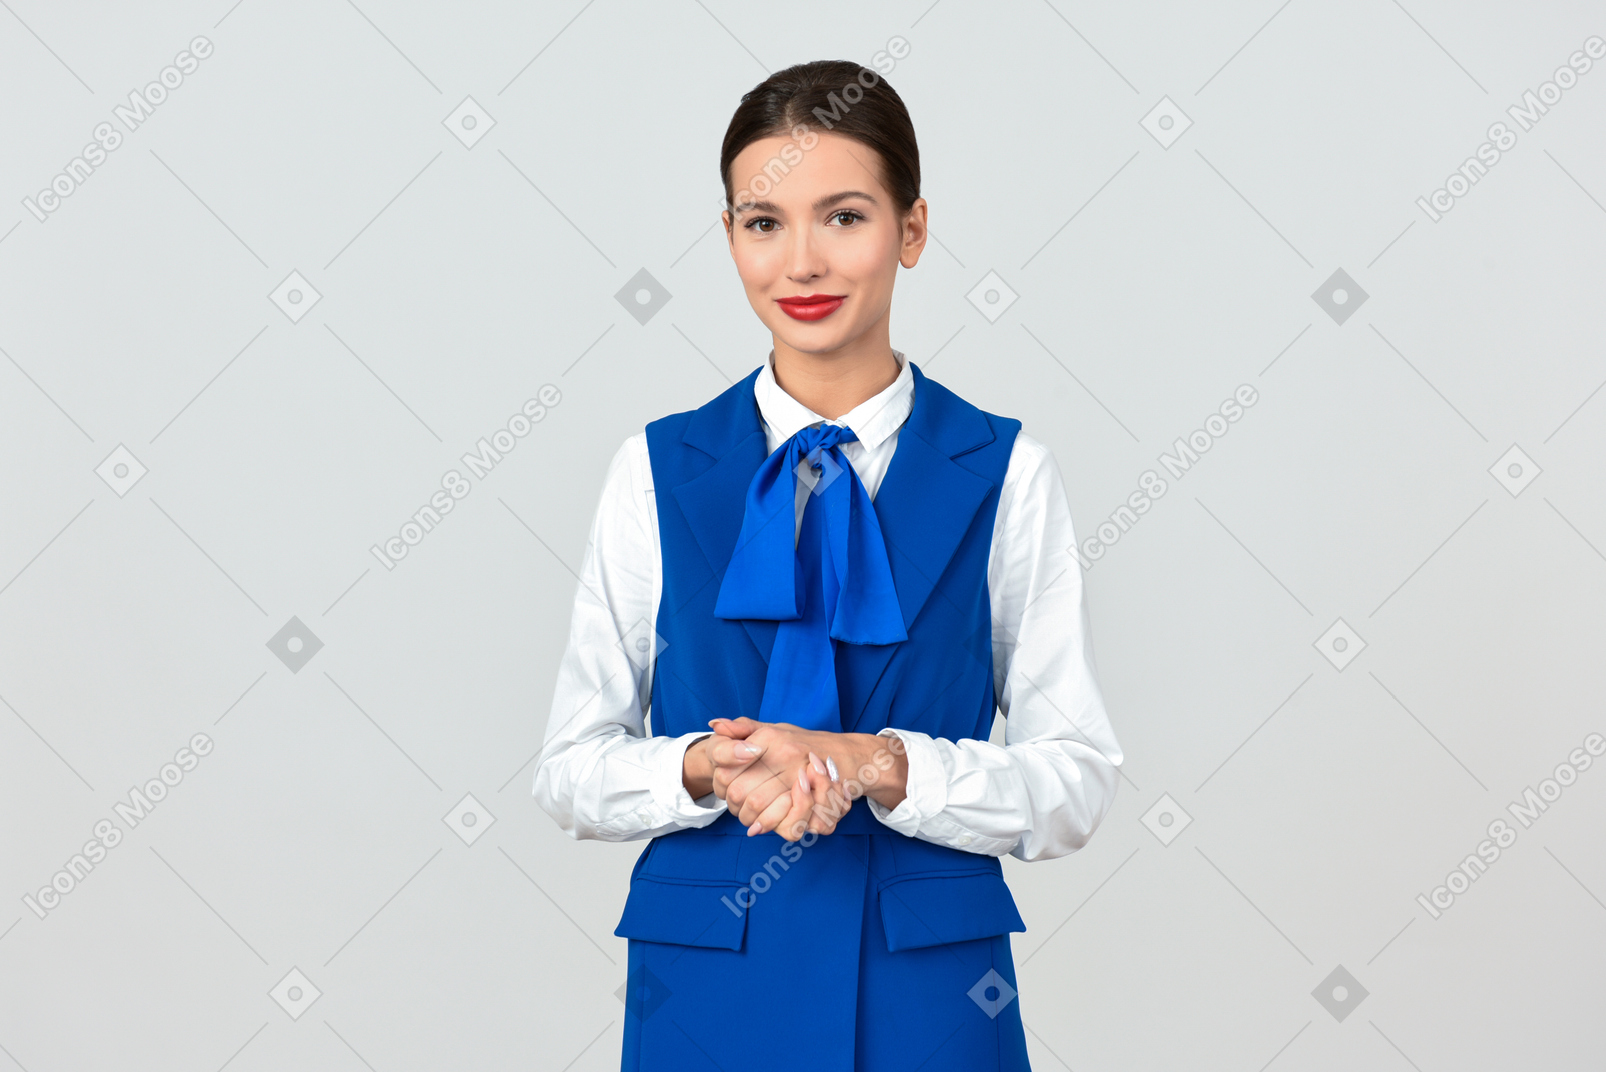 Belle hôtesse de l'air en uniforme bleu